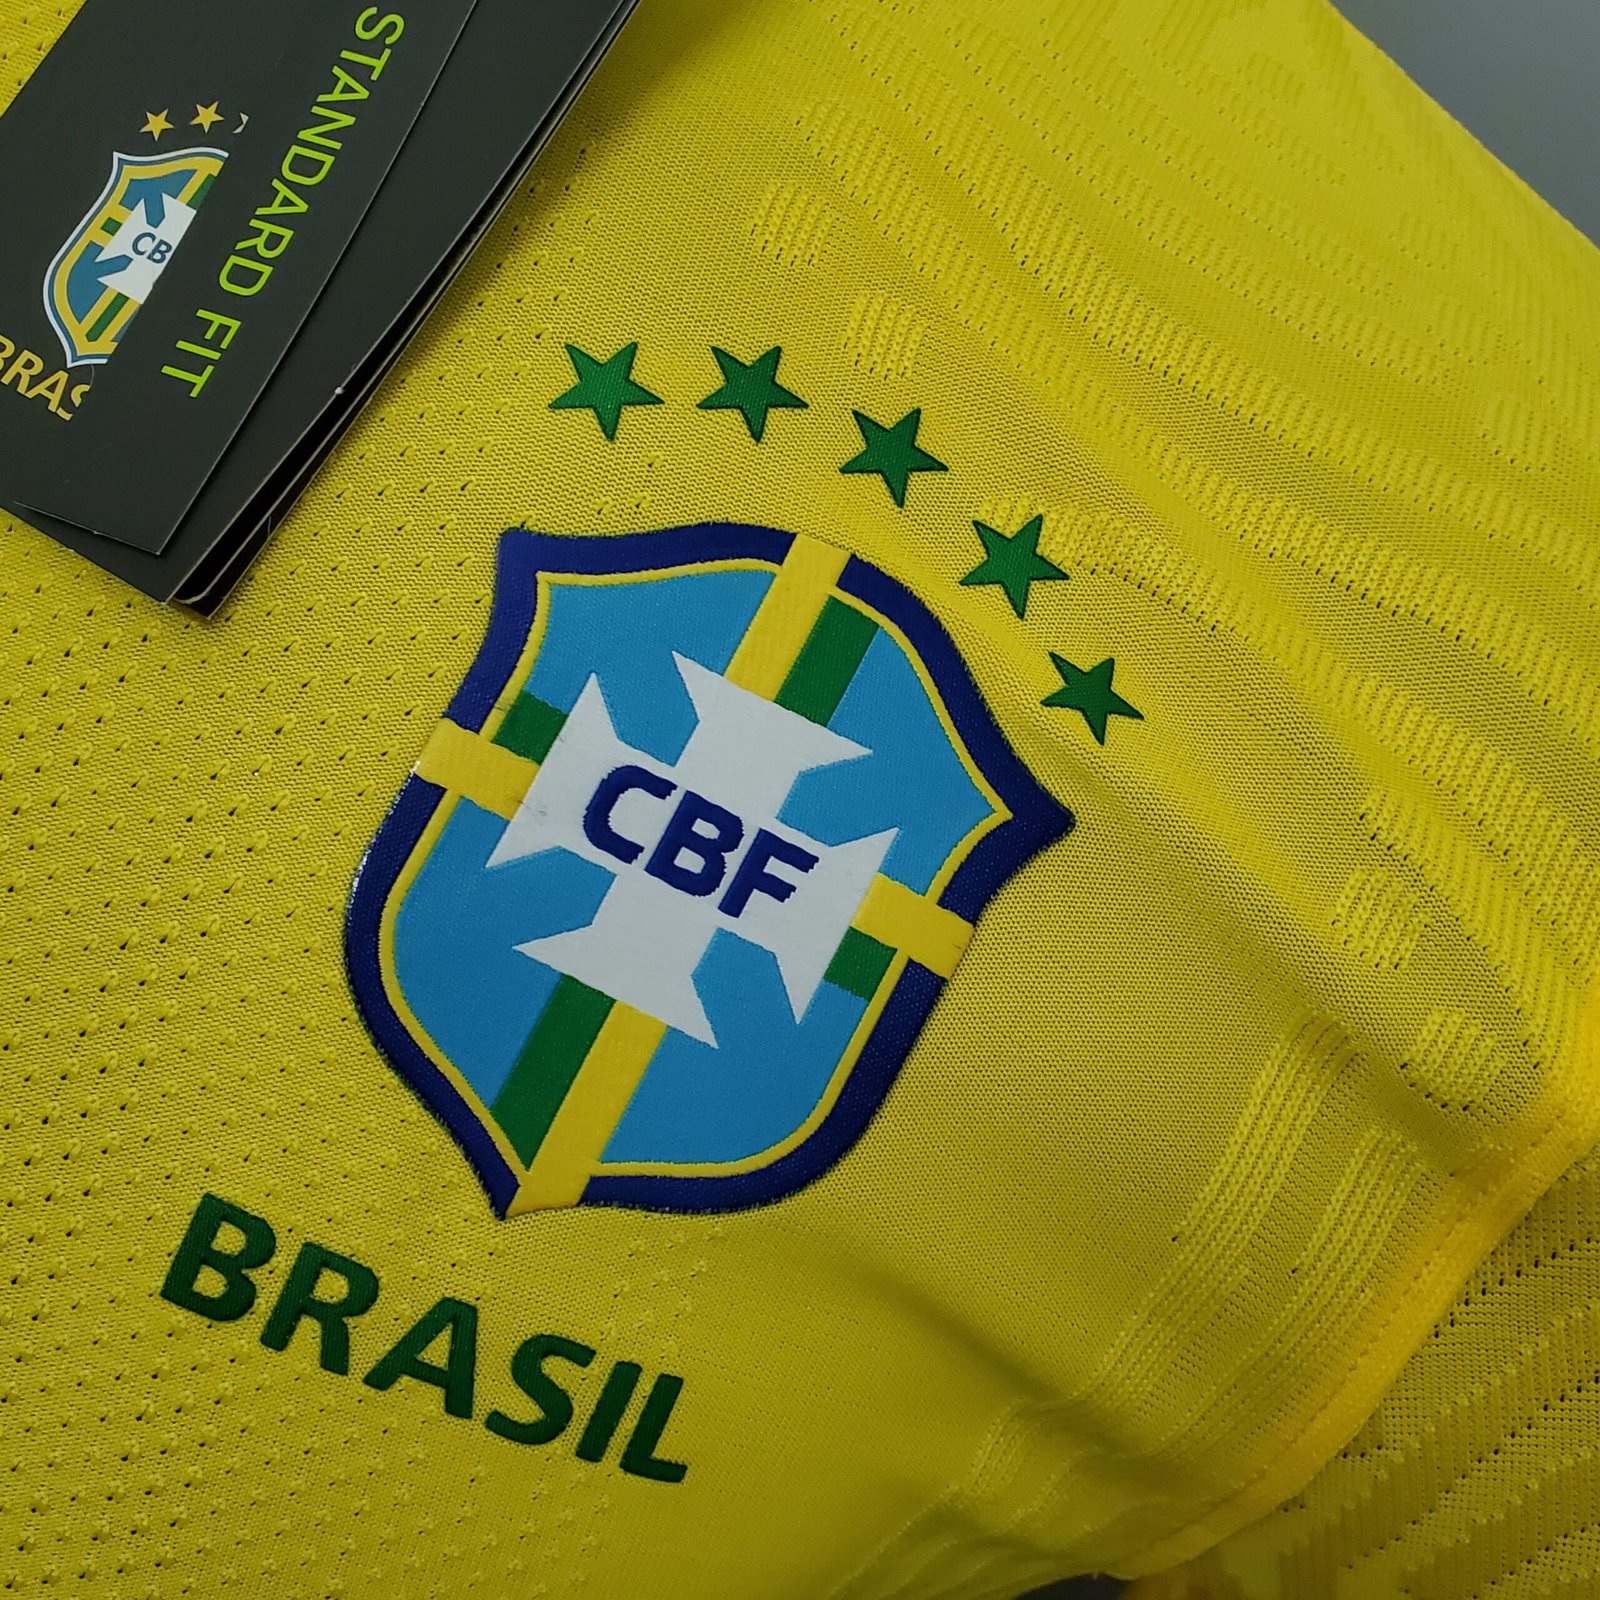 Camisa Seleção Brasileira Amarela Home 2020/2021 – Versão Jogador